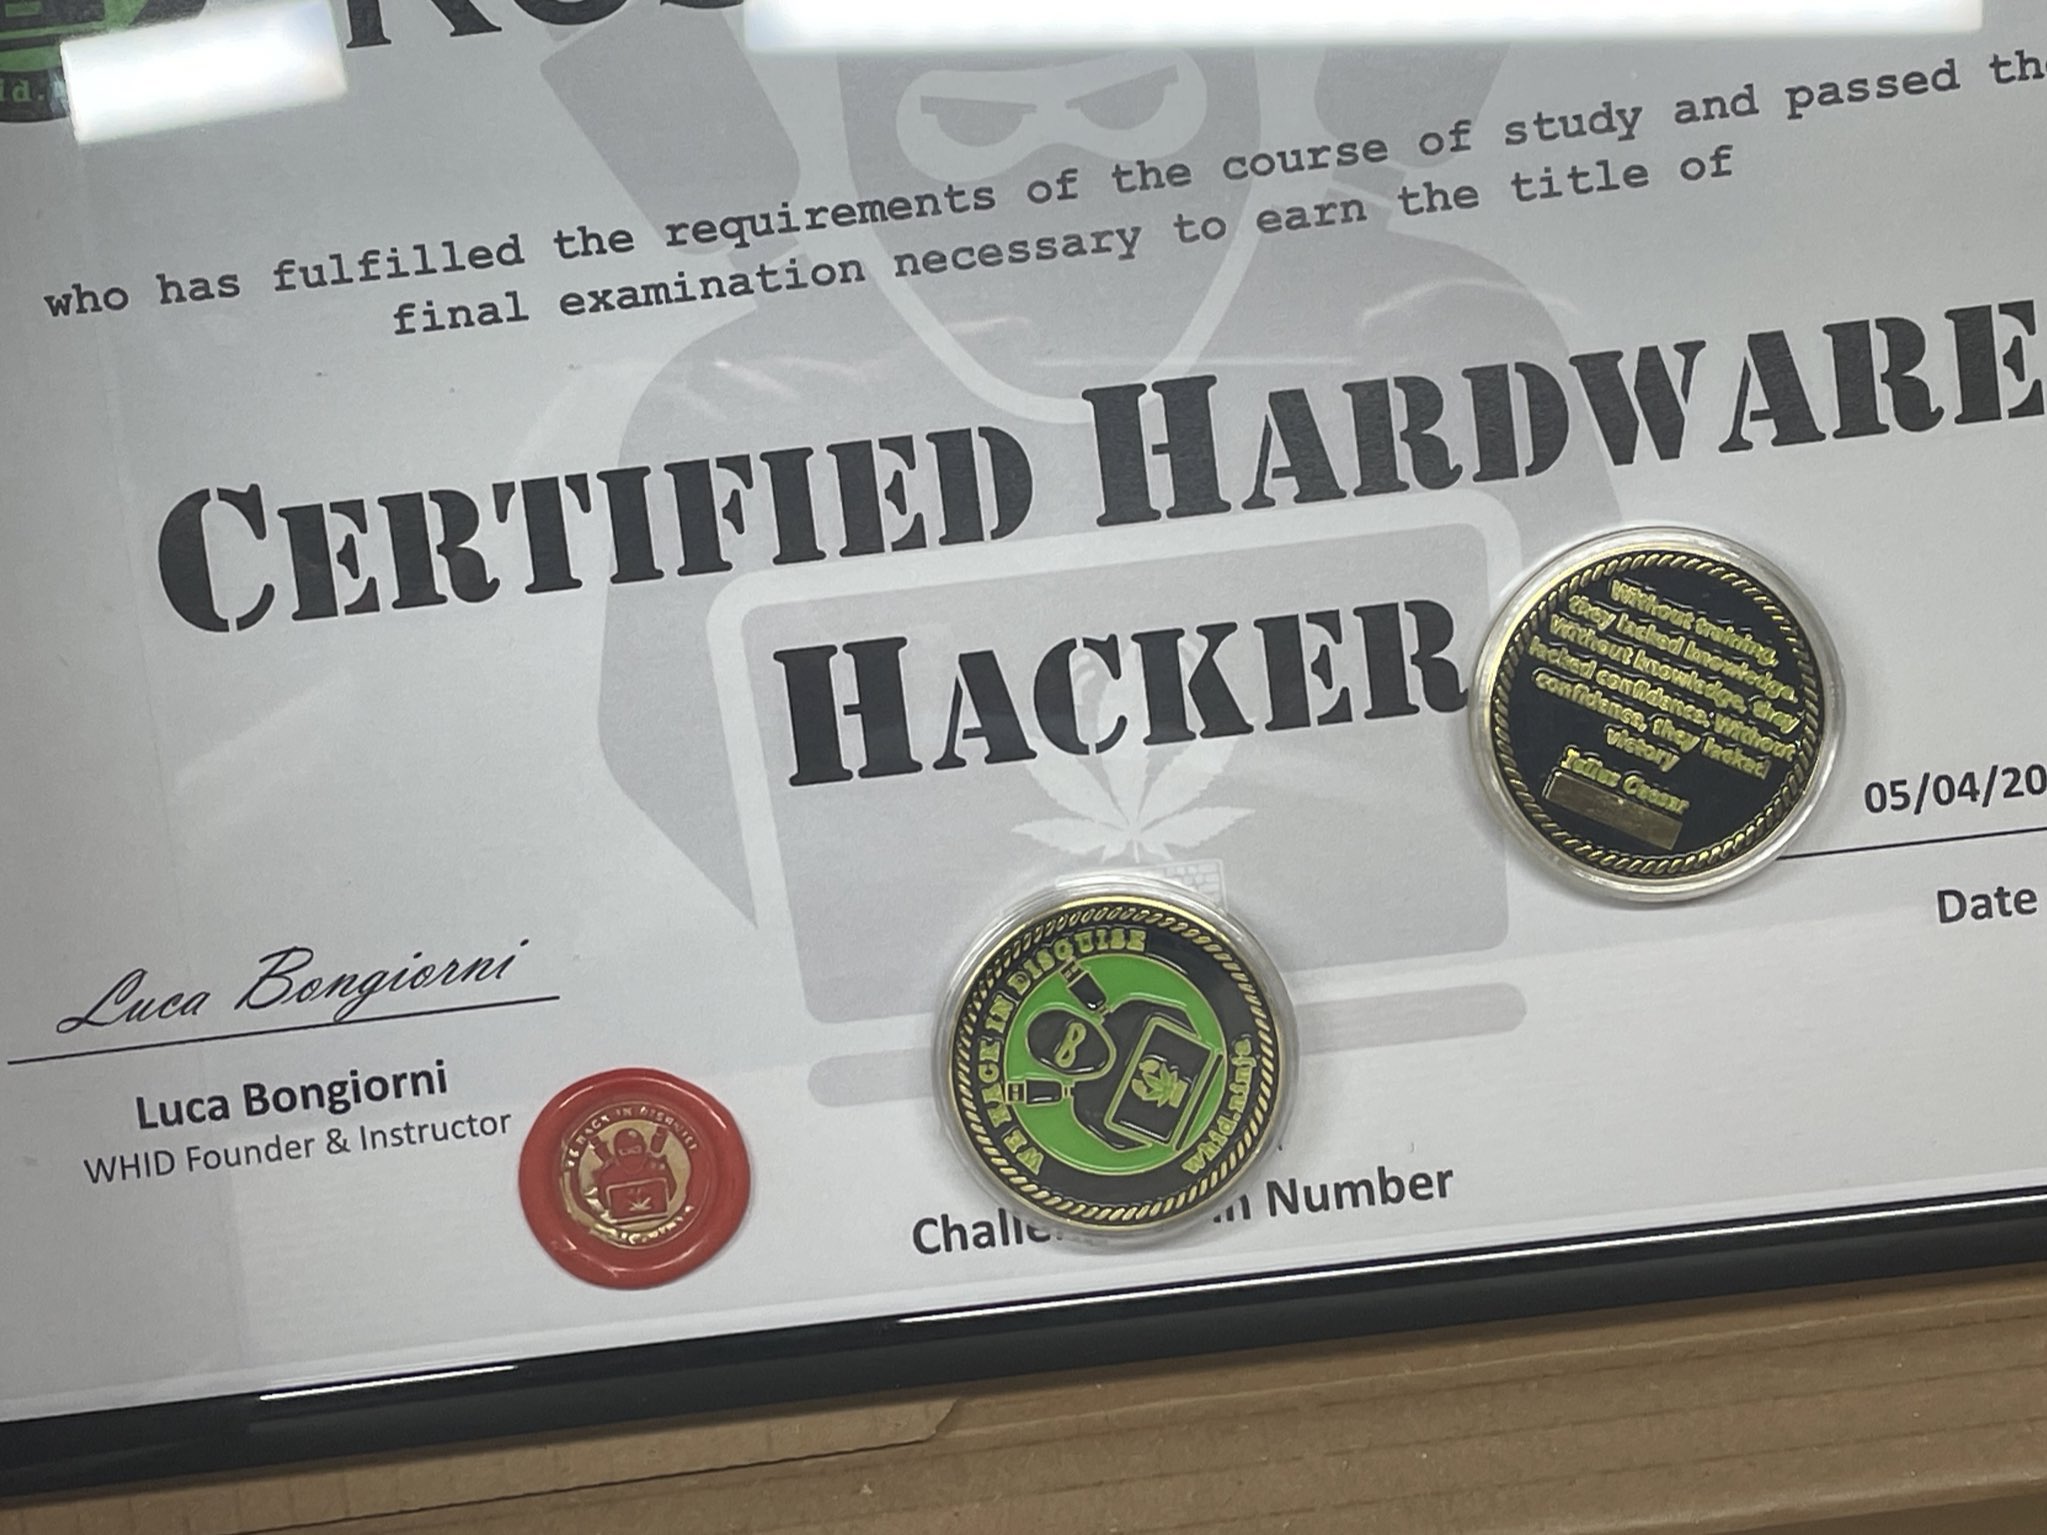 Exam Voucher - Certified Hardware Hacker - CH2